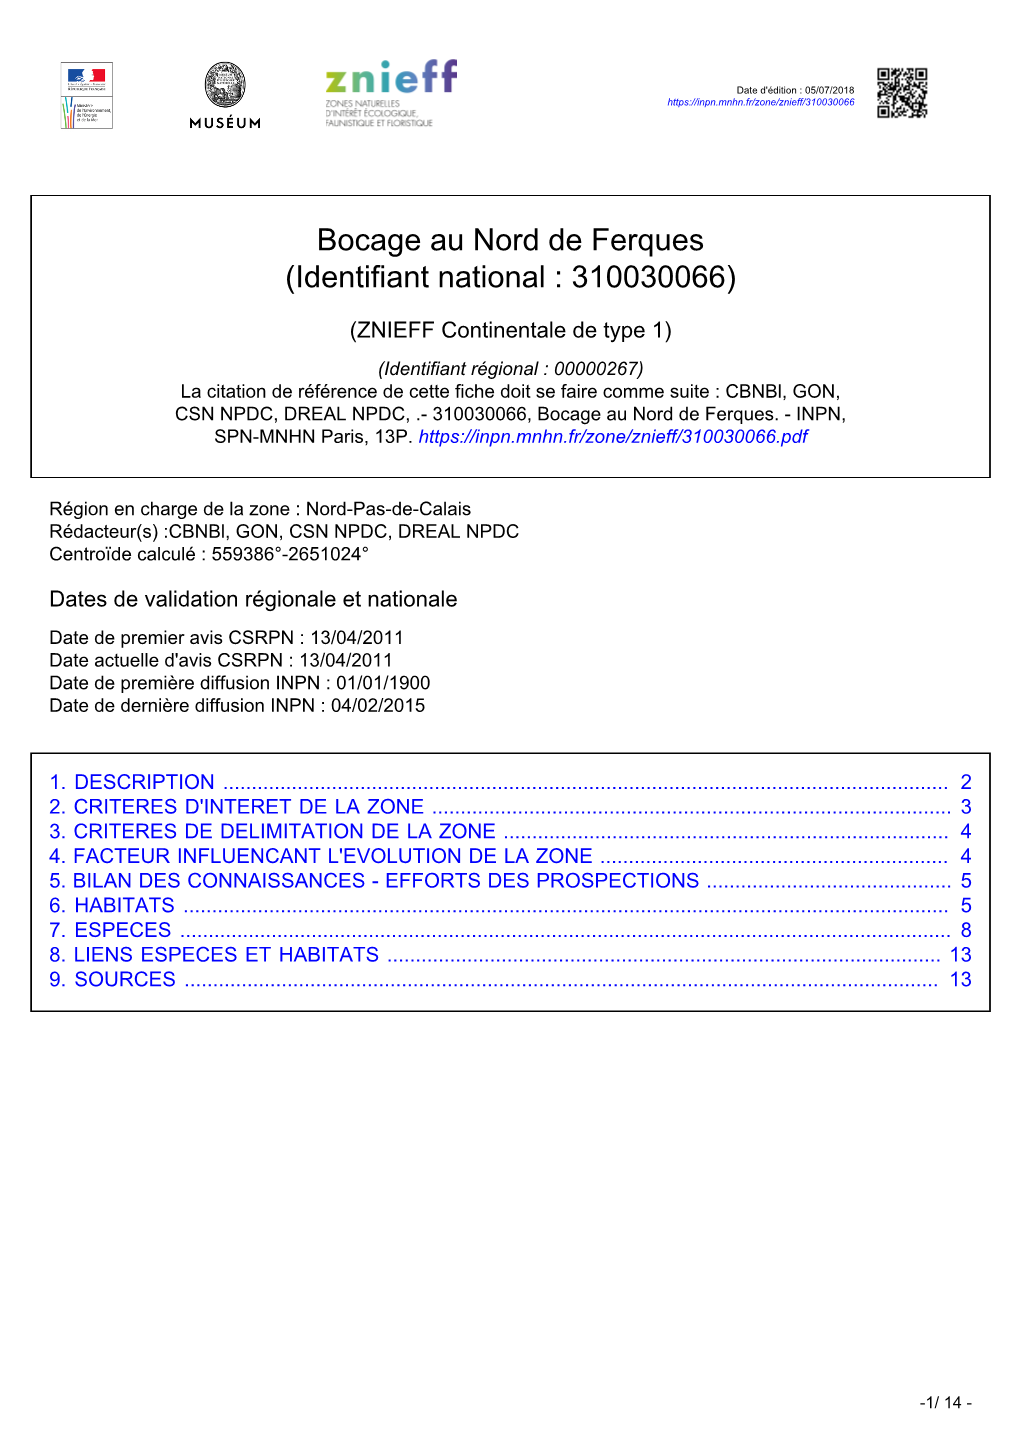 Bocage Au Nord De Ferques (Identifiant National : 310030066)